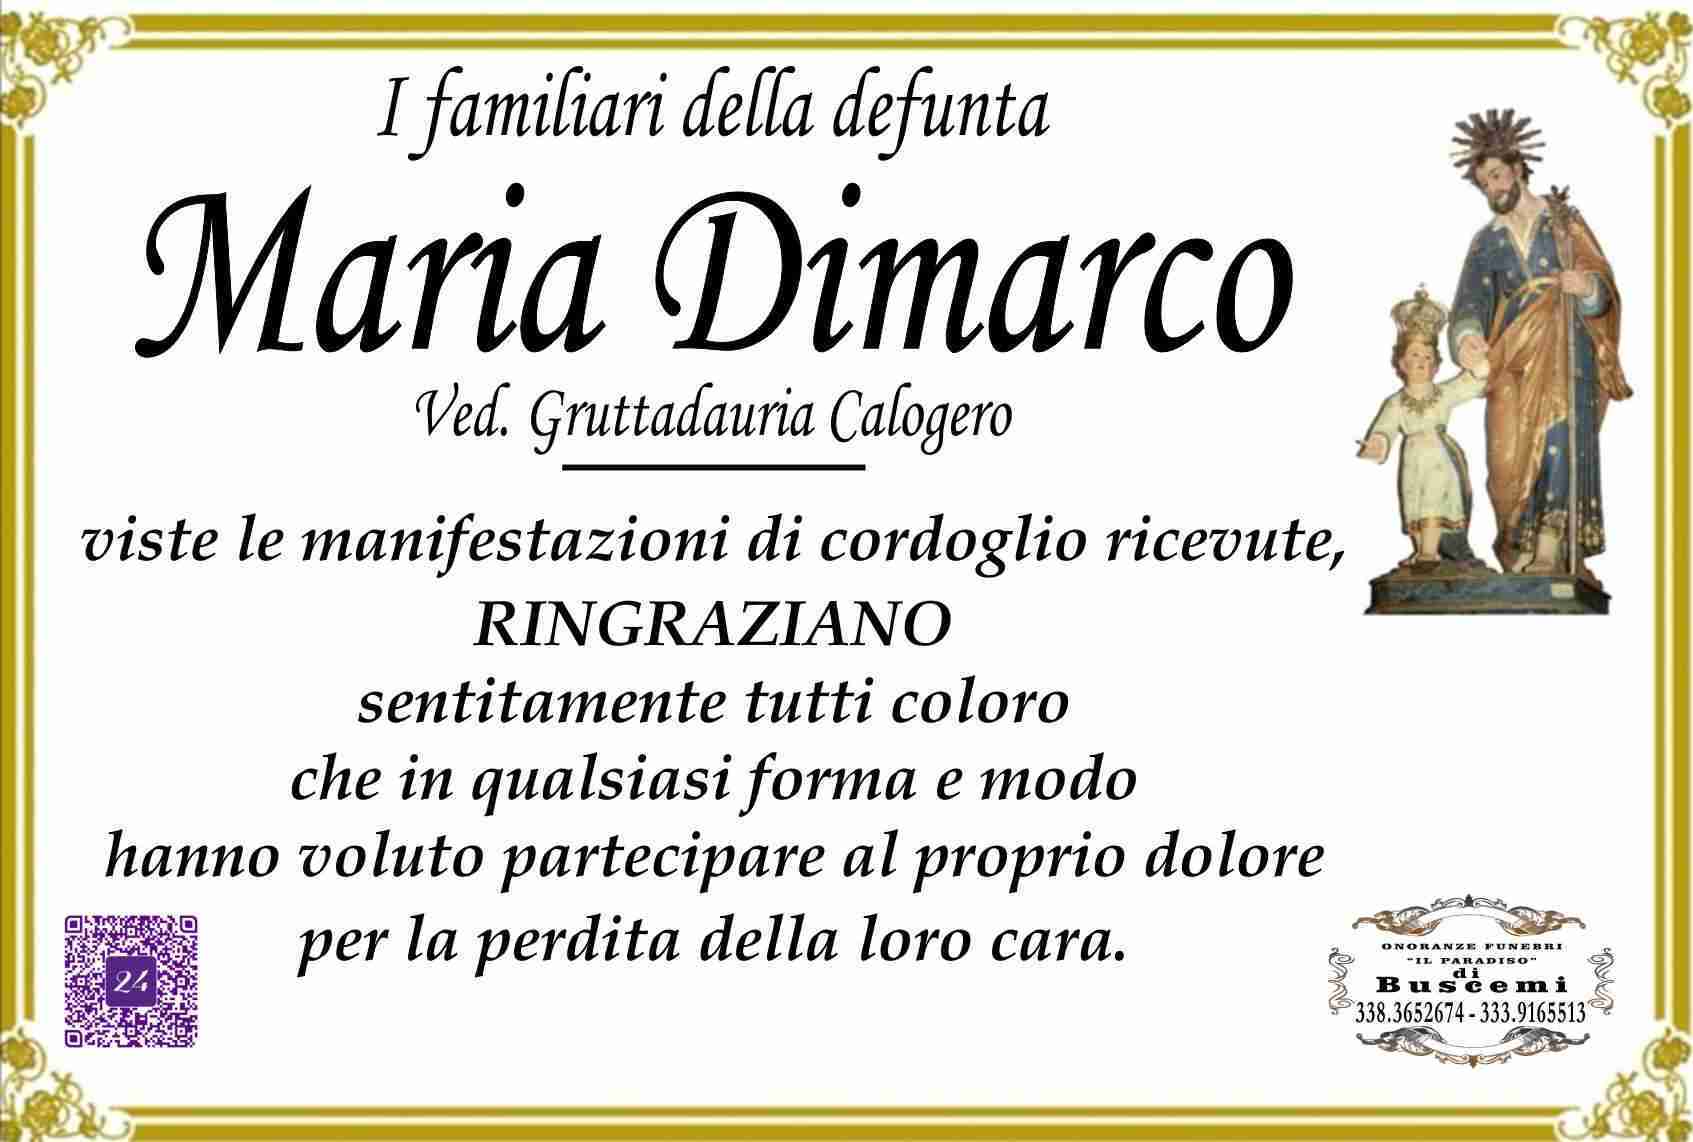 Maria Dimarco